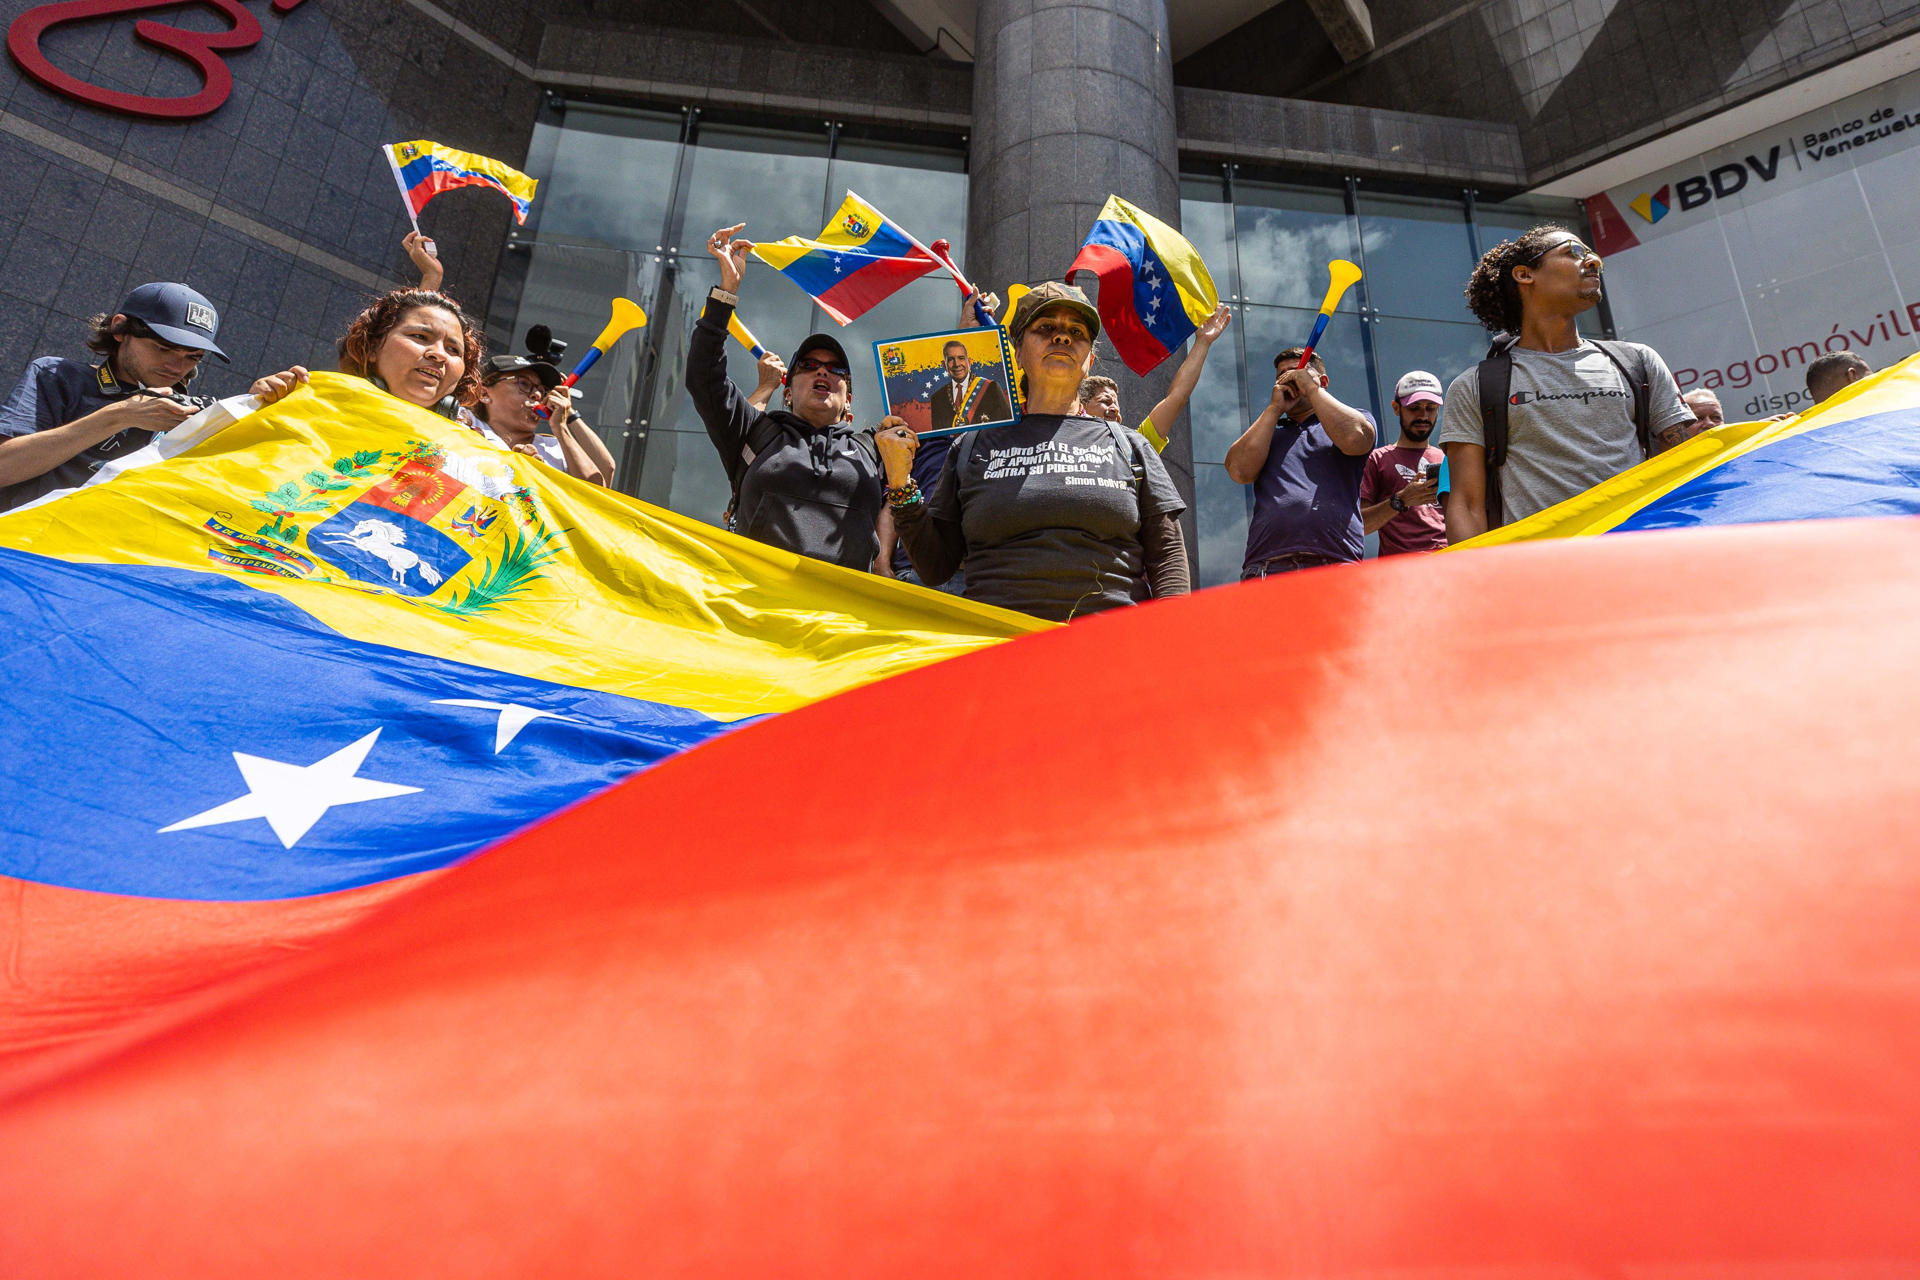 La crisis electoral continúa en Venezuela con manifestaciones y cruces de acusaciones